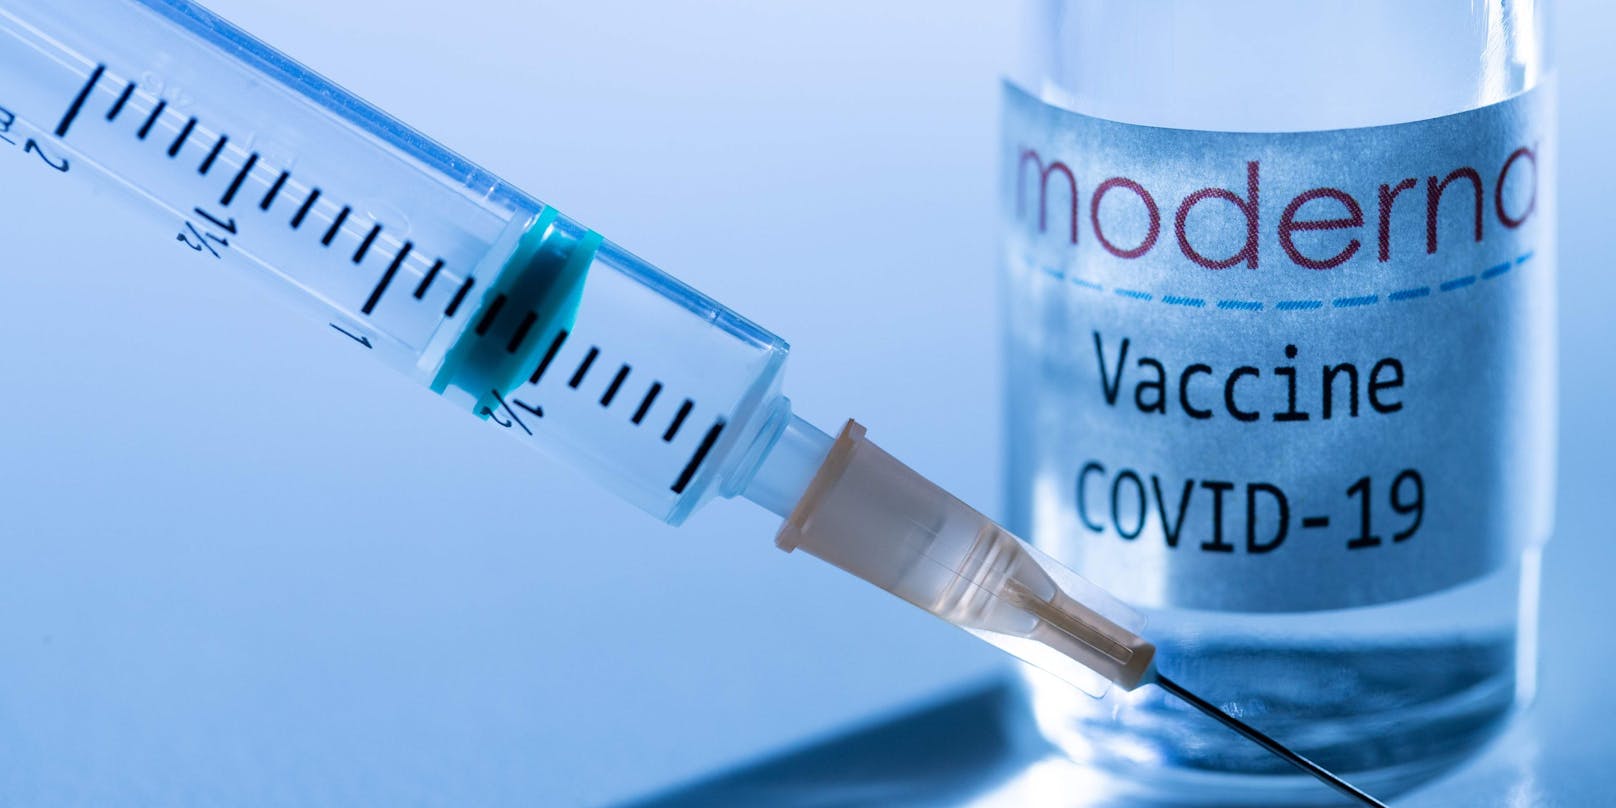 Symbolbild: Der Pharmakonzern Moderna will eine 94,5-prozentige Wirksamkeit bei seinem Corona-Impfstoff erzielt haben.